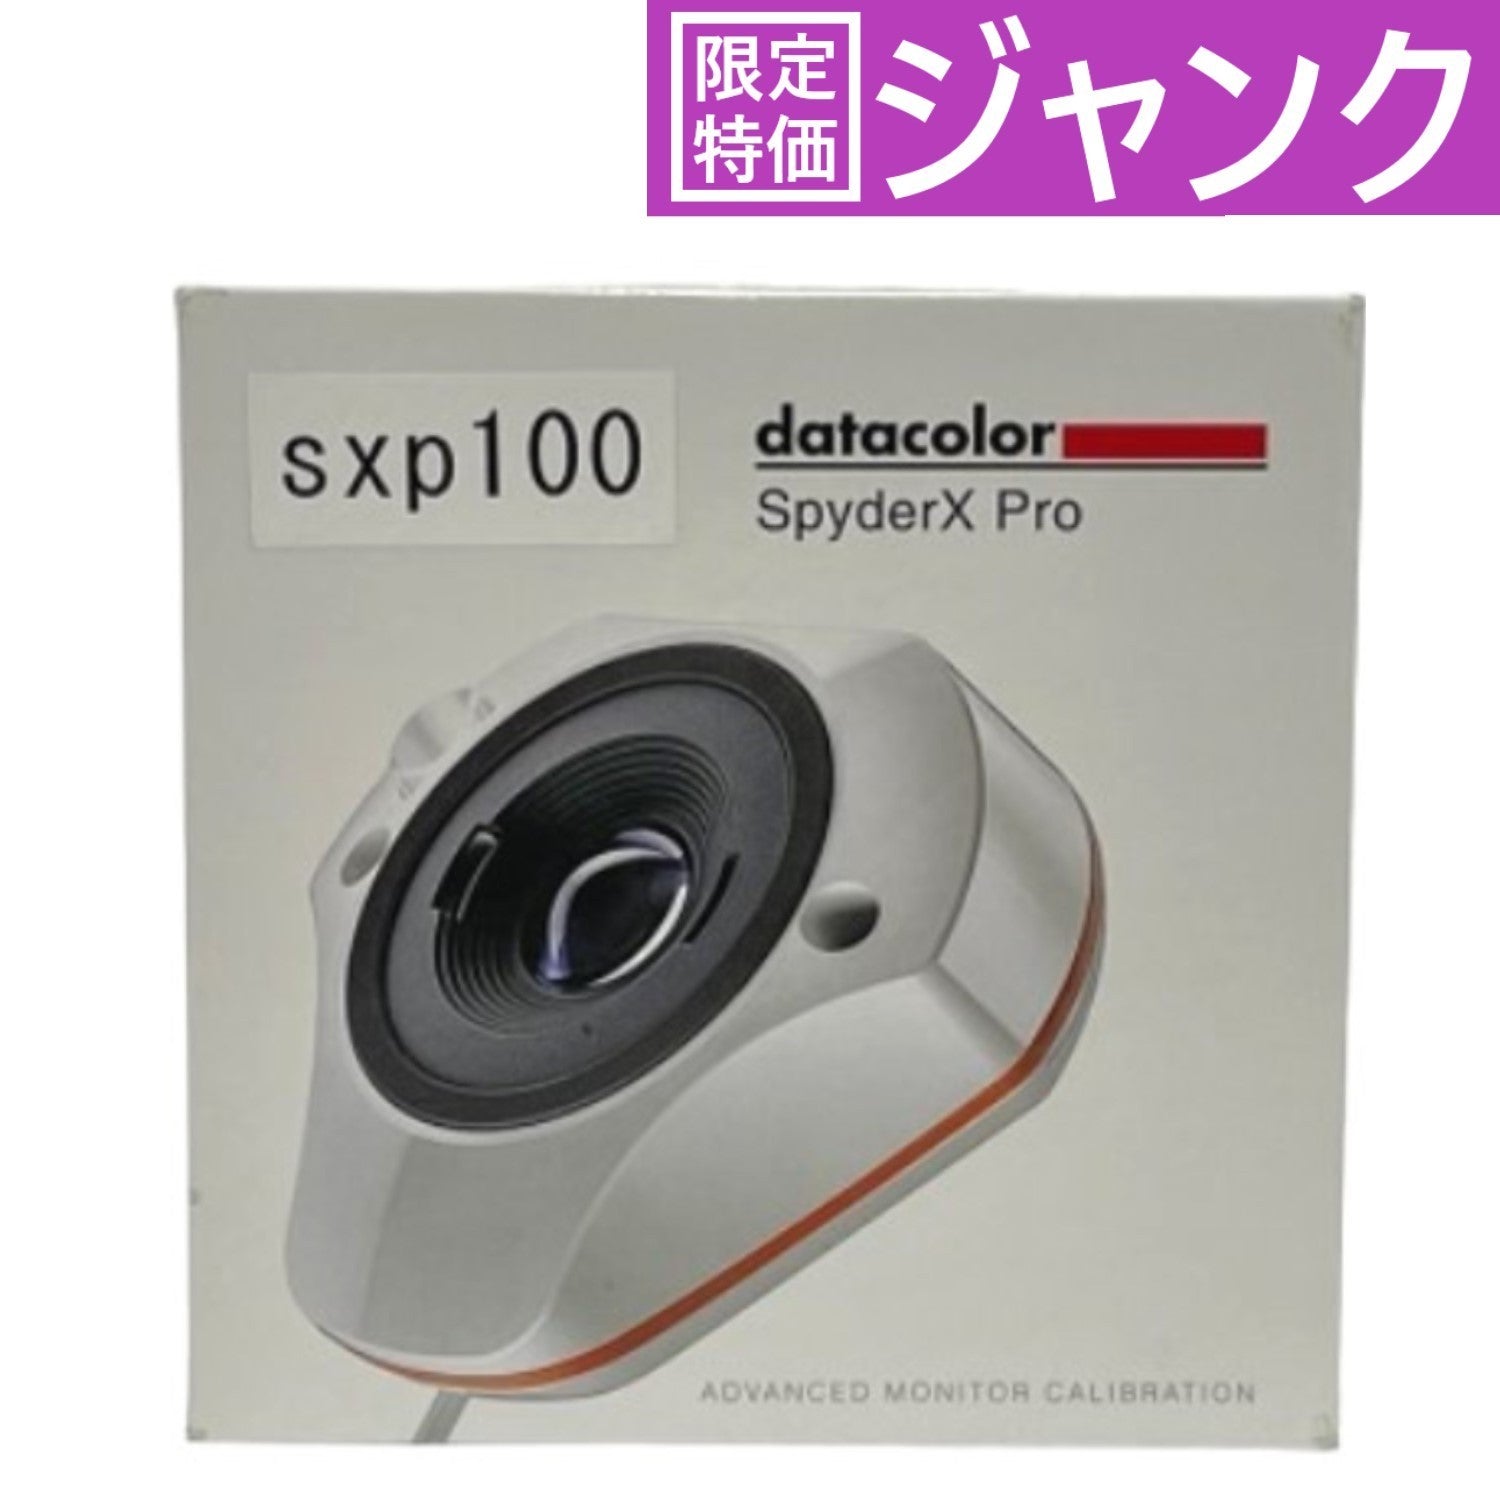 Datacolor SpyderX Pro ディスプレイキャリブレーションツール SXP100 [中古] [難あり]